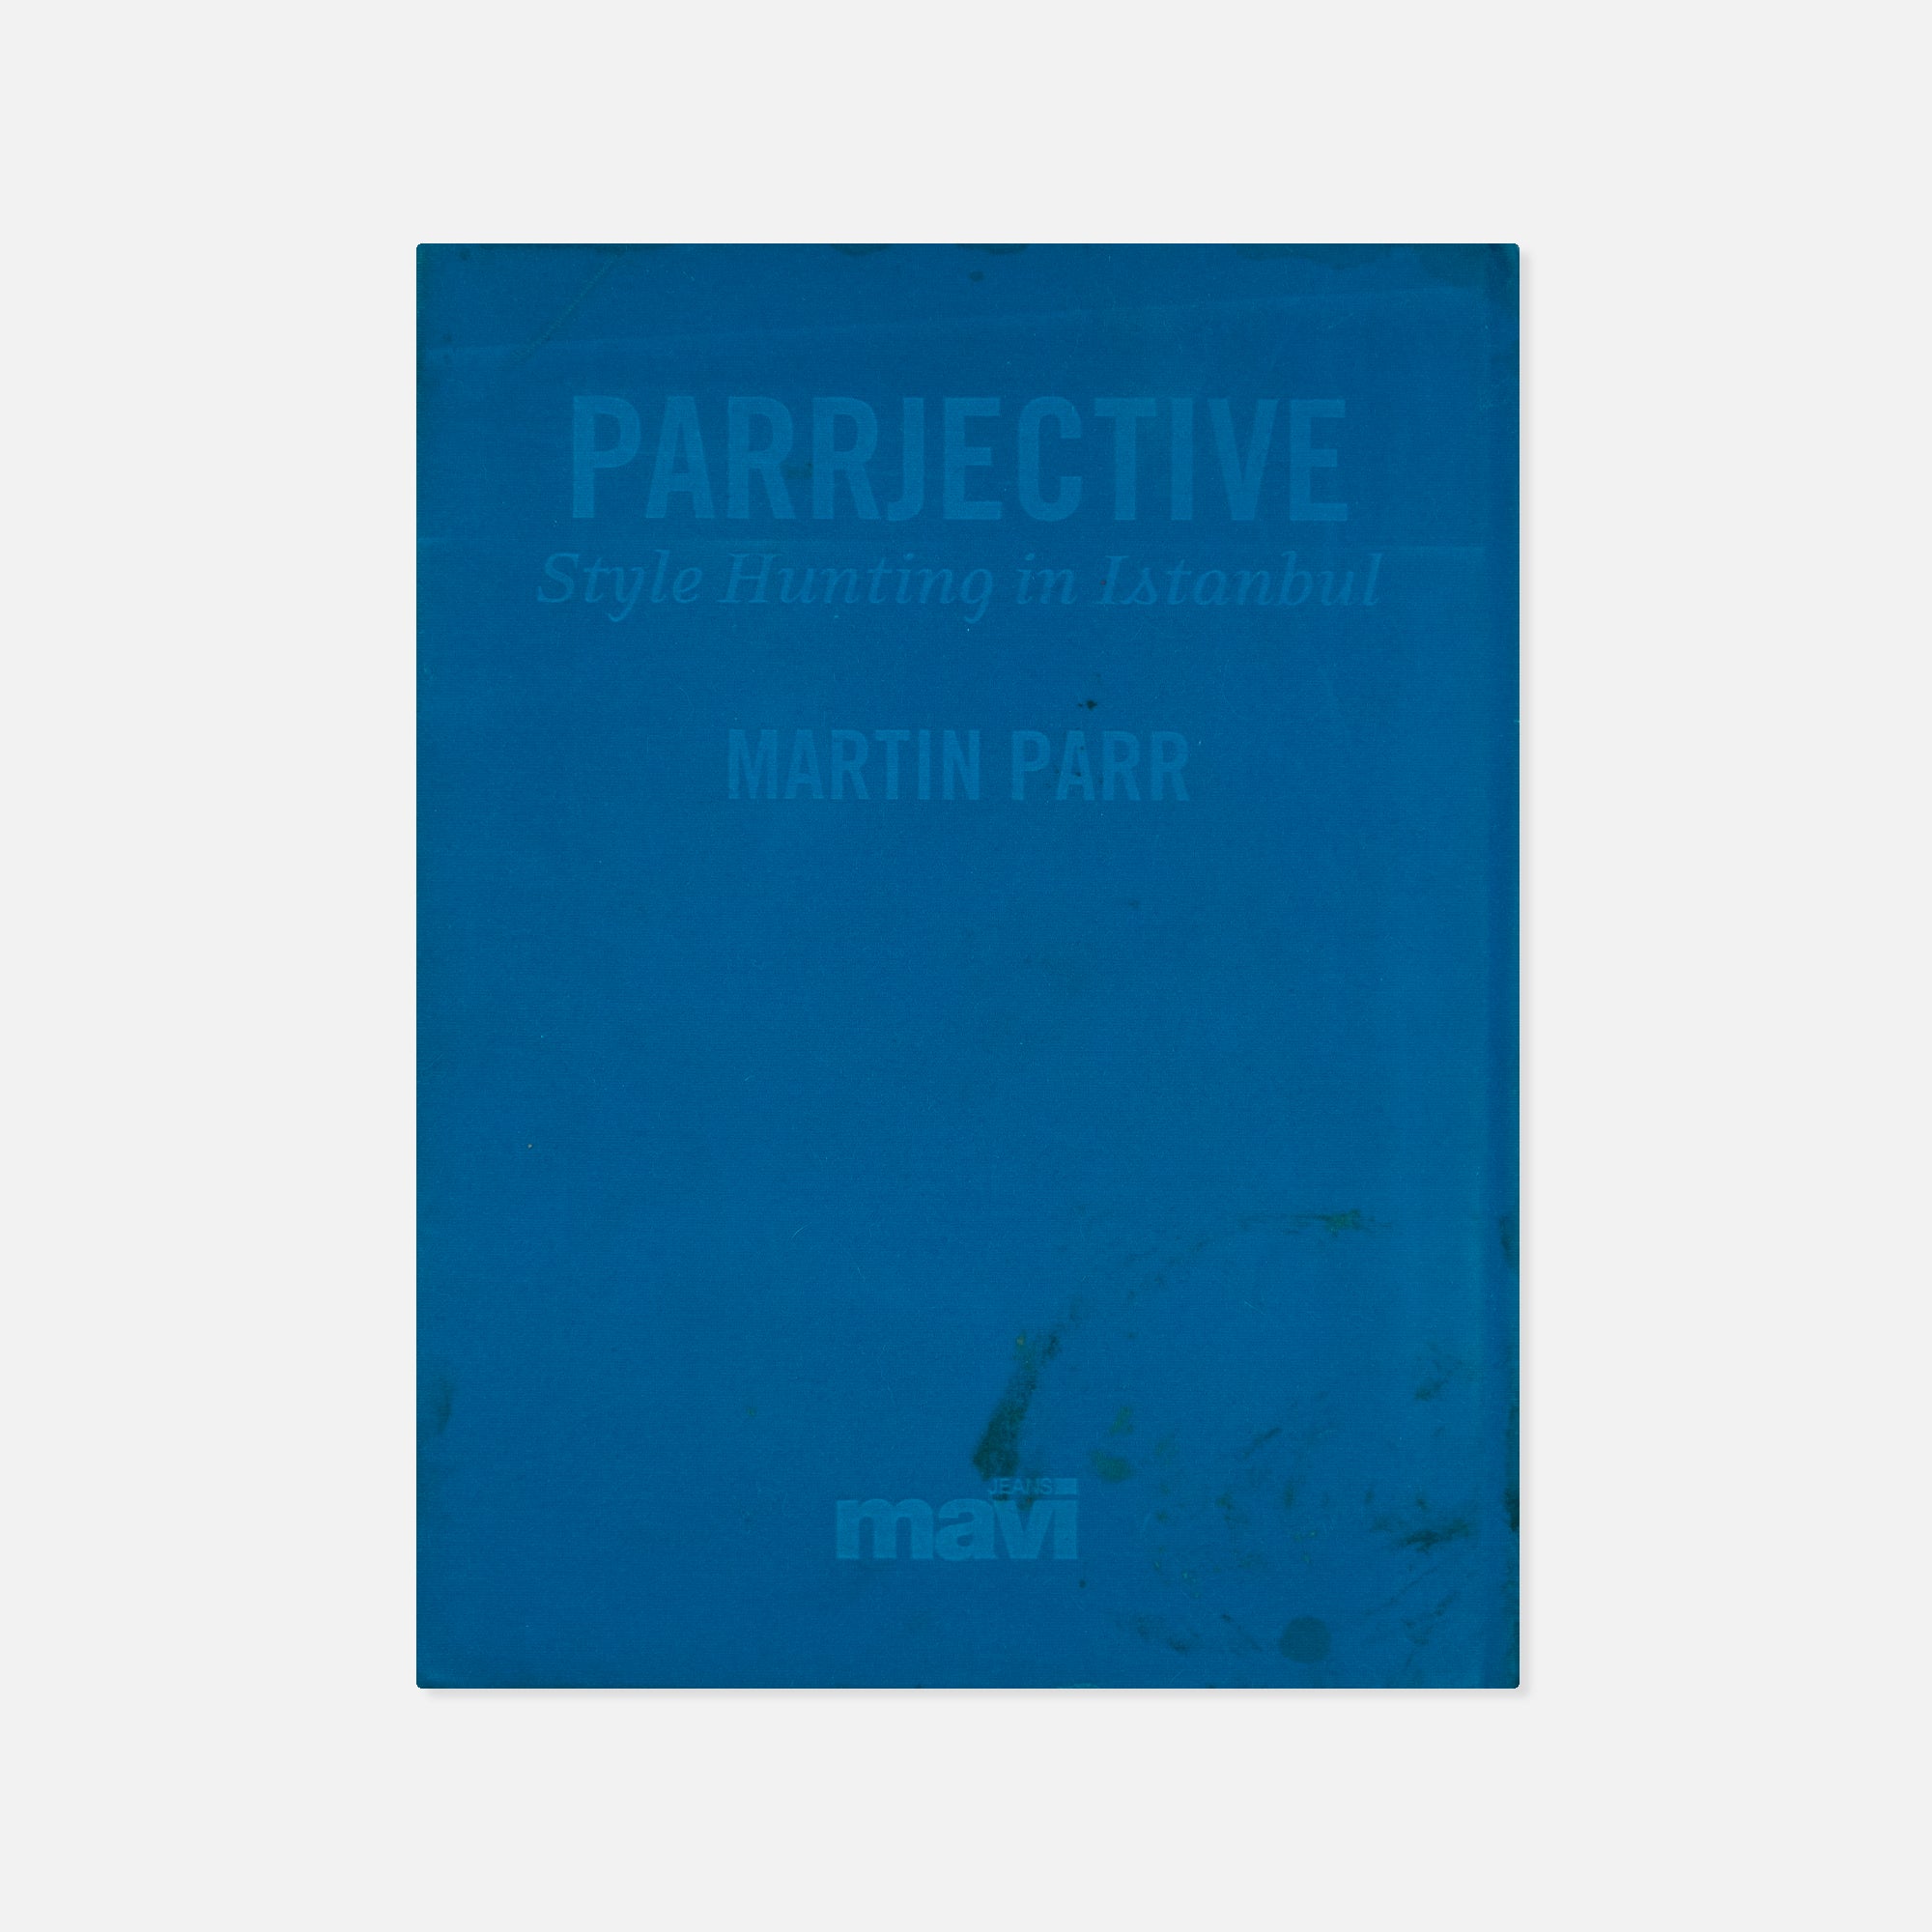 Martin Parr — Parrjektif